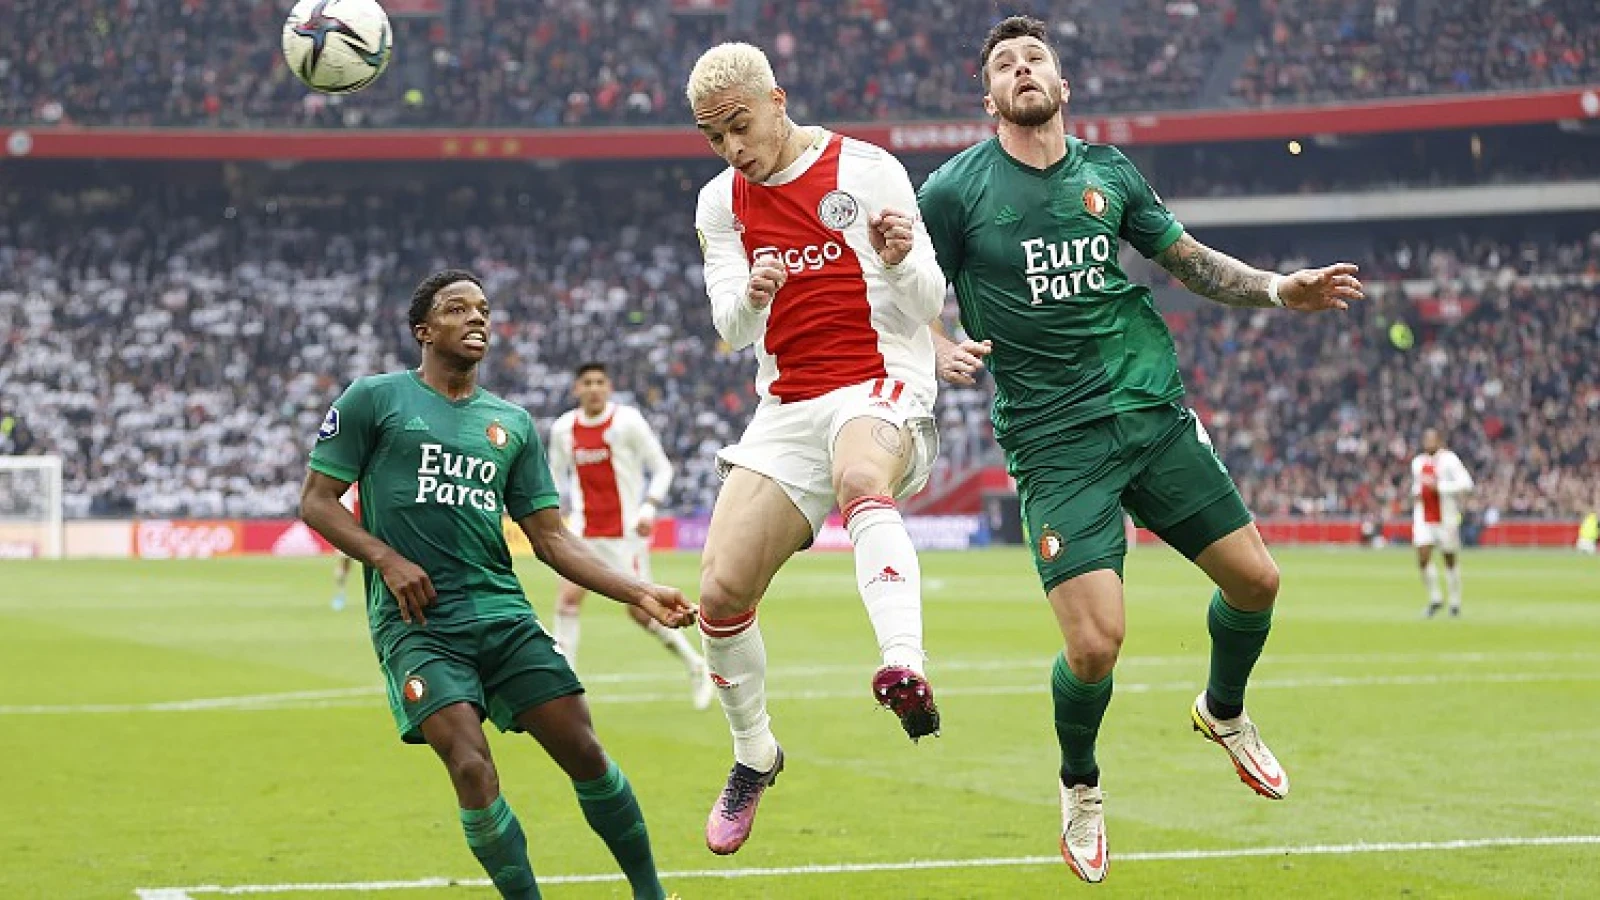 Interesse in verdediger onverminderd: 'Veiling voor Feyenoord'